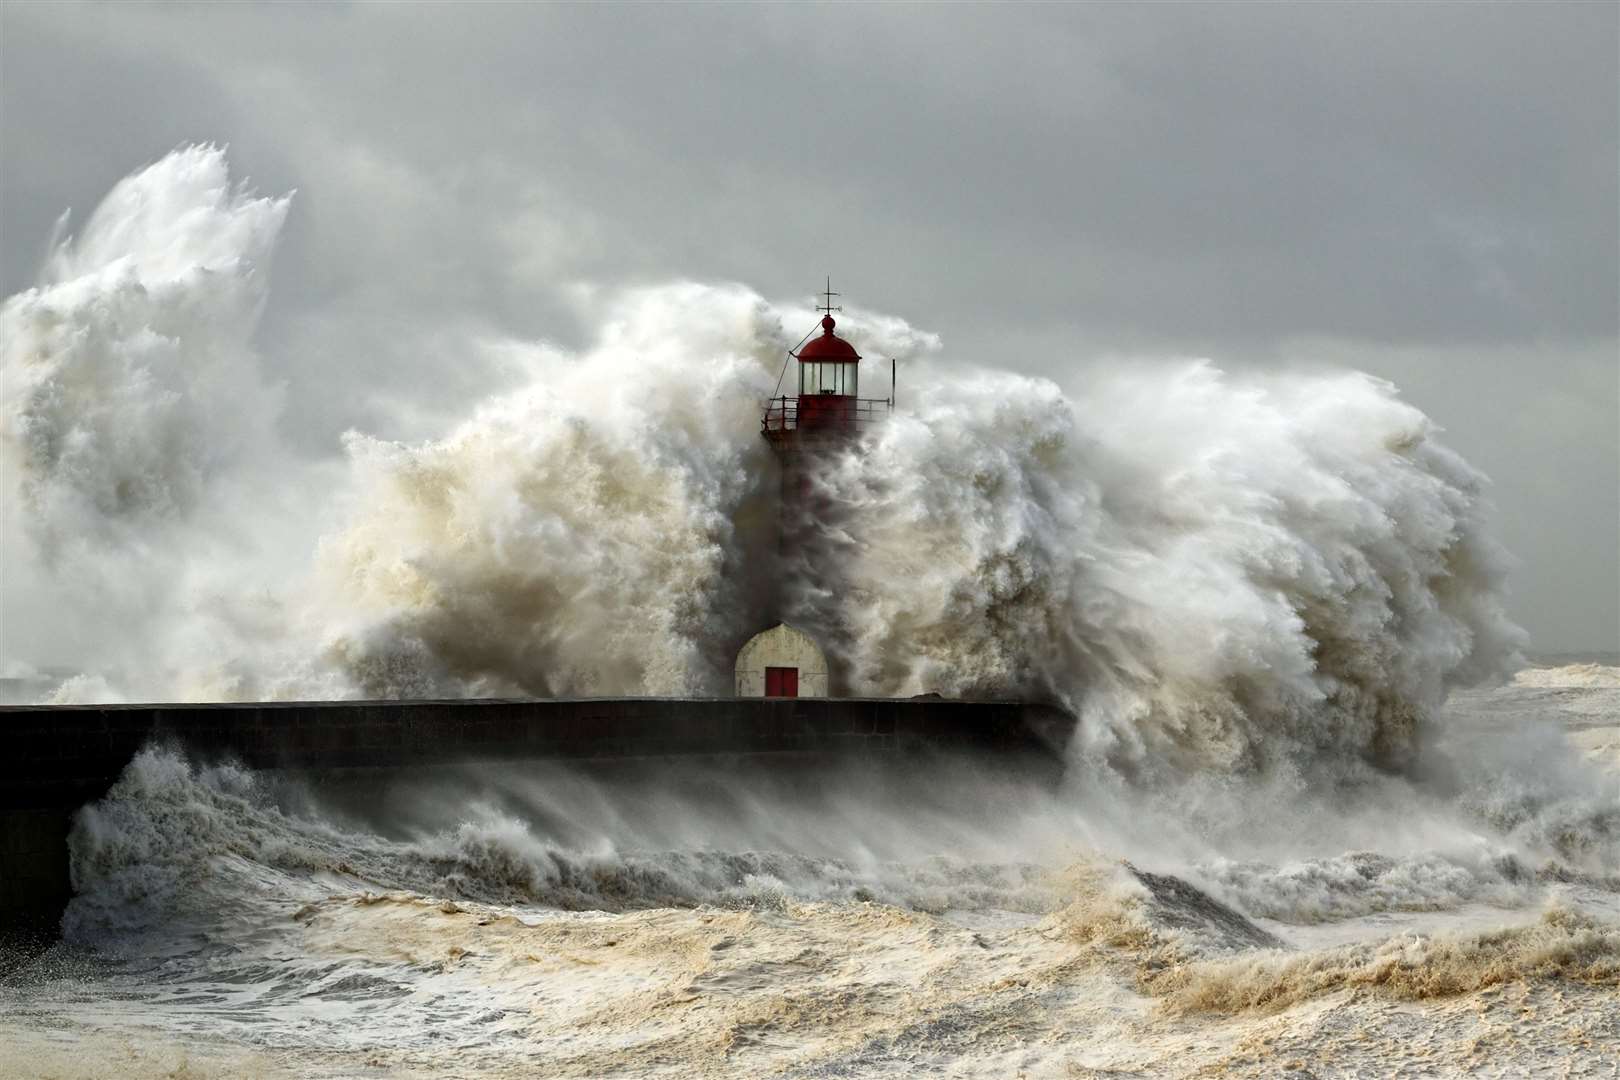 Stormy seas (file image).